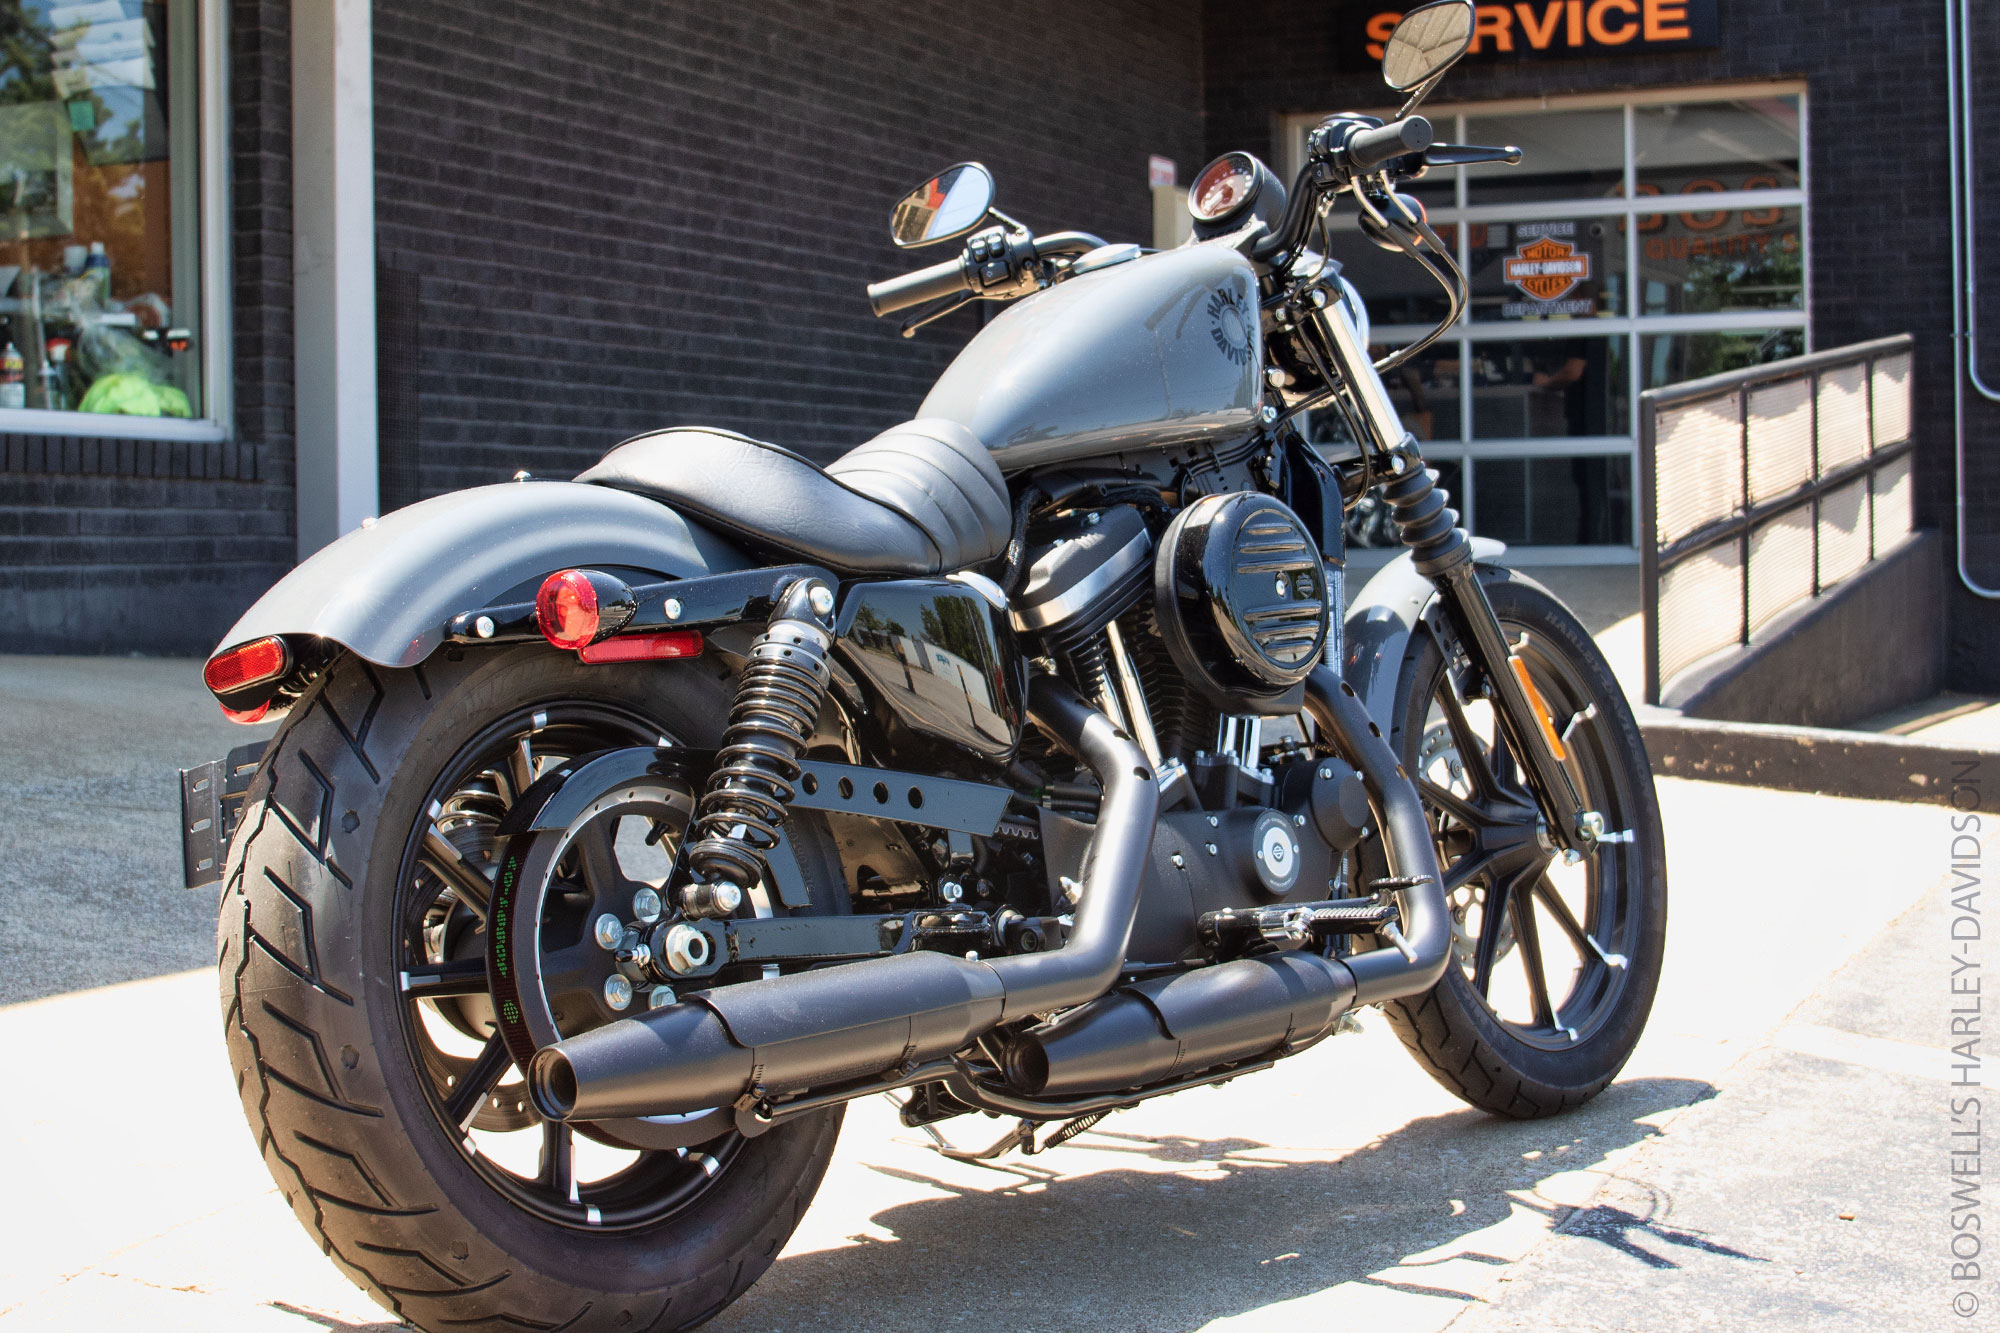 Harley Sportster Iron 883: Unleash the Road's Roar!